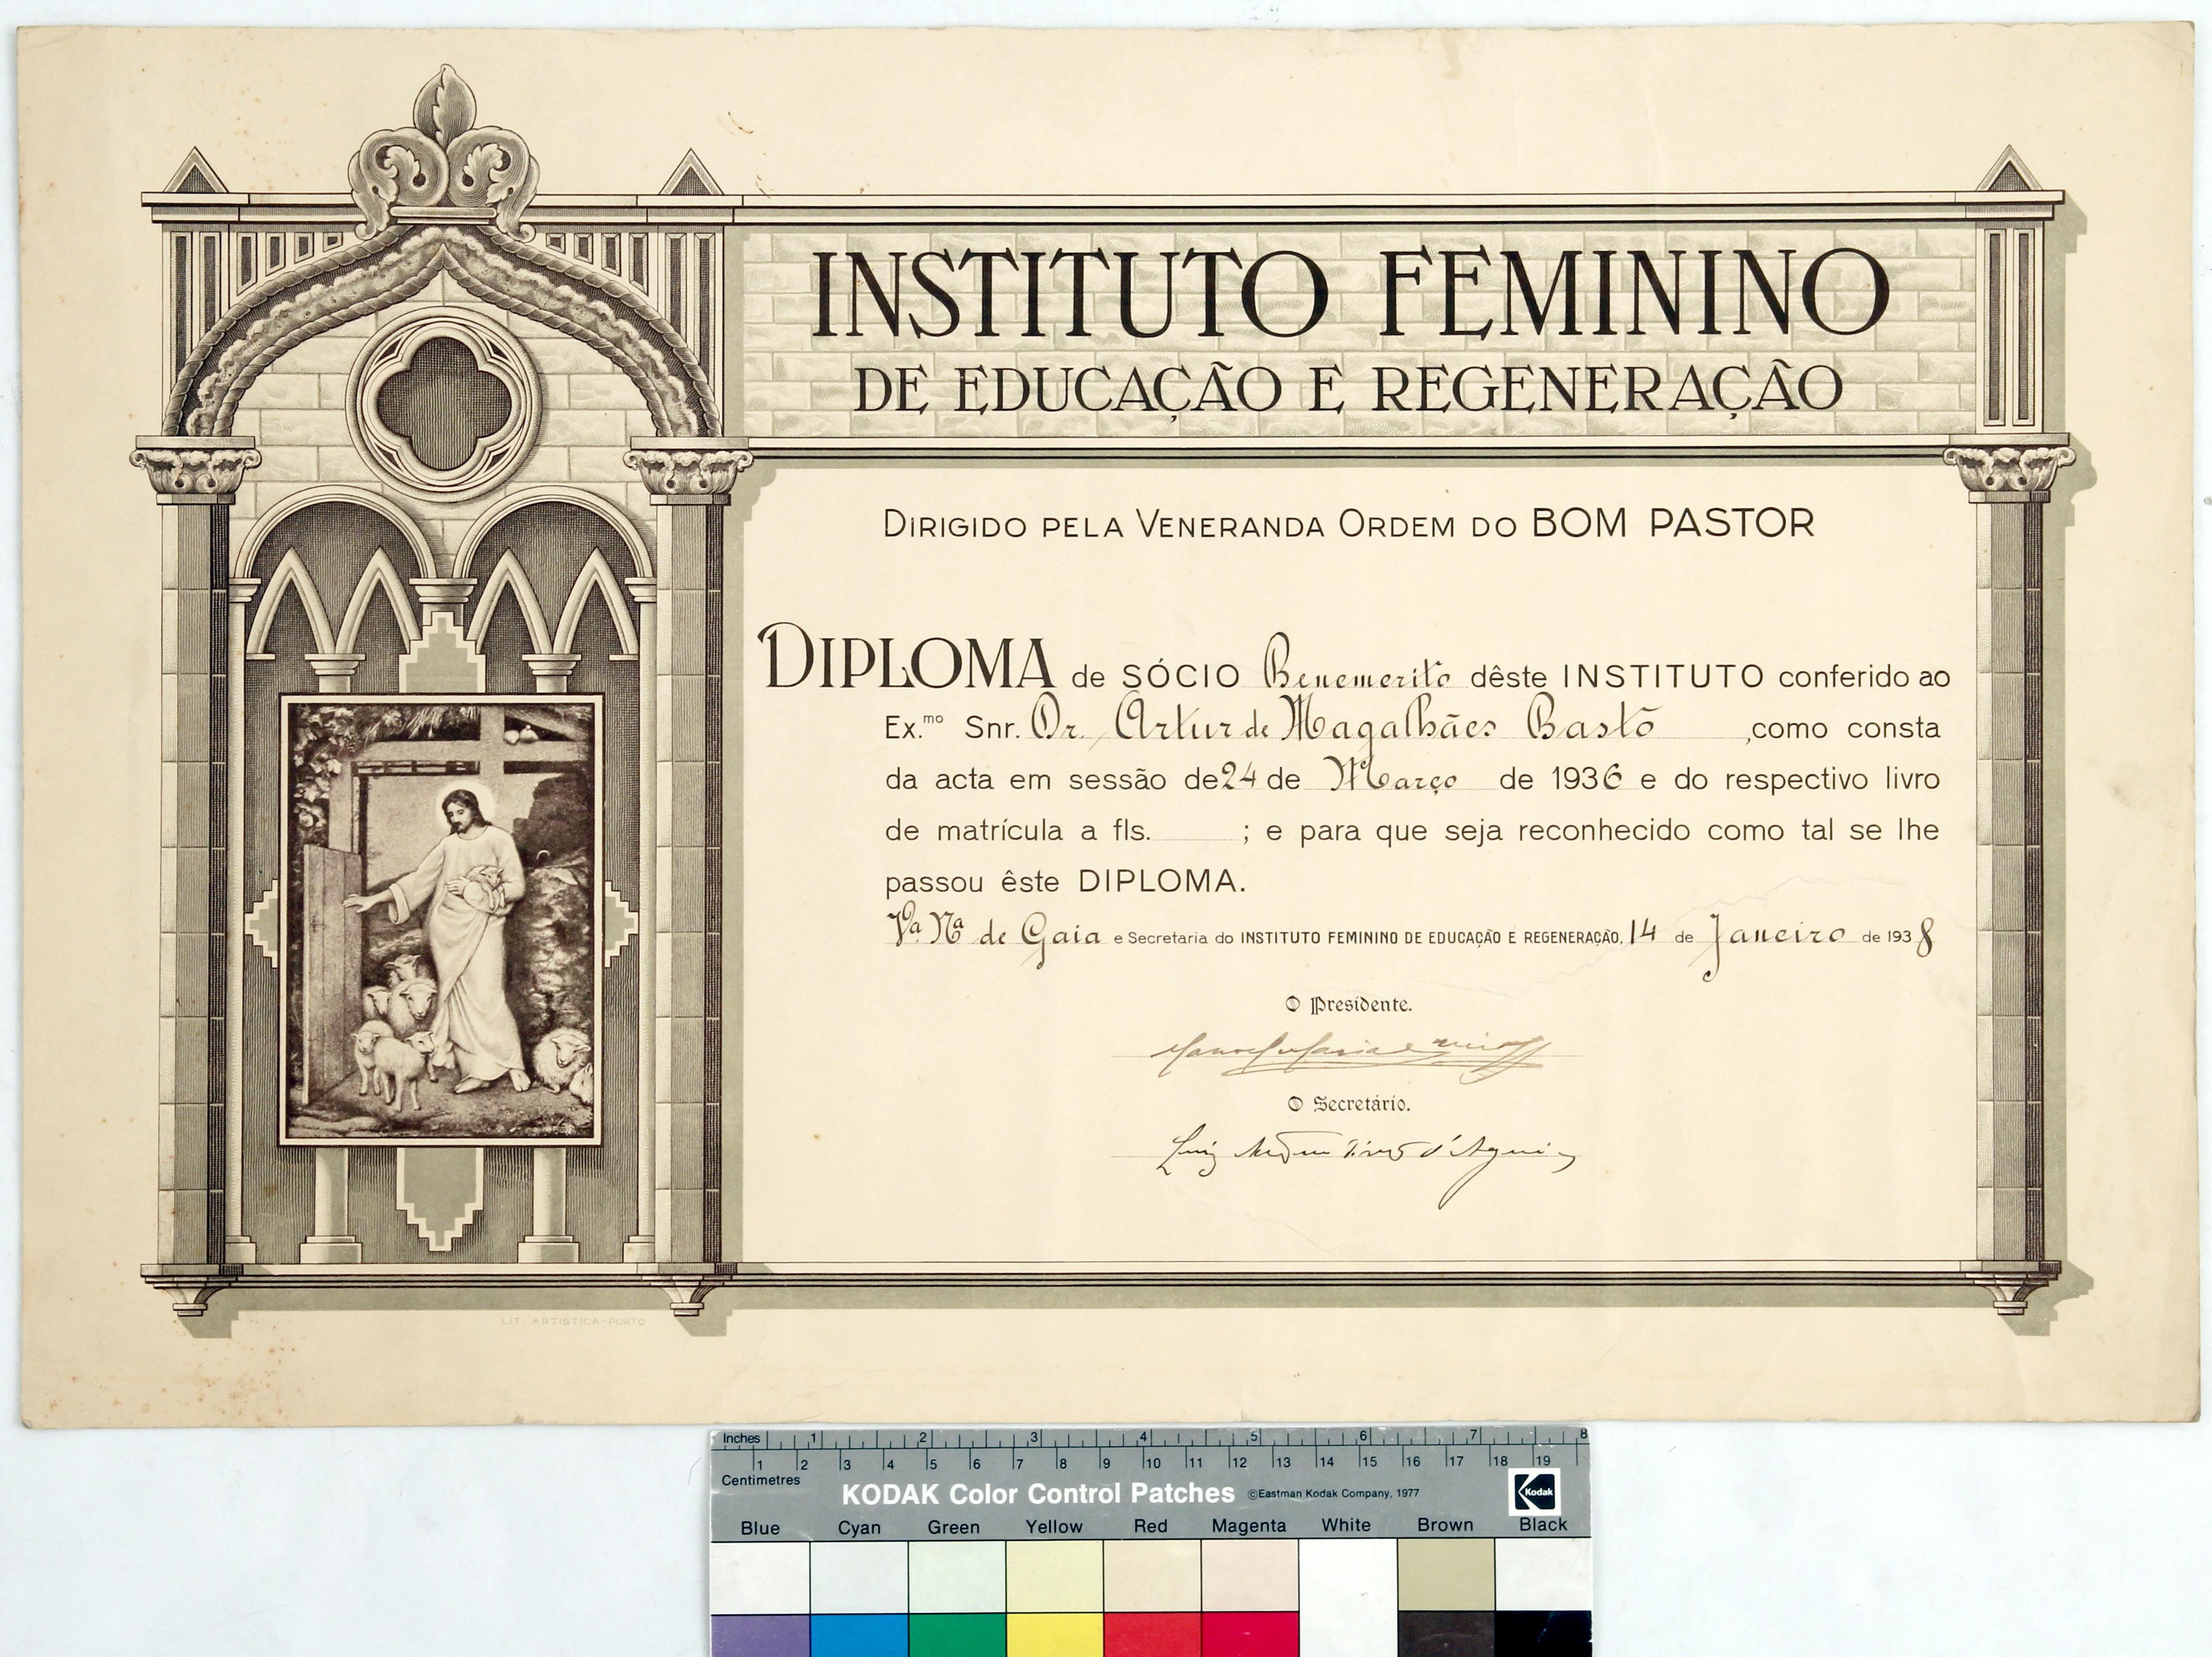 Diploma de sócio benemérito do Instituto Feminino de Educação e Regeneração